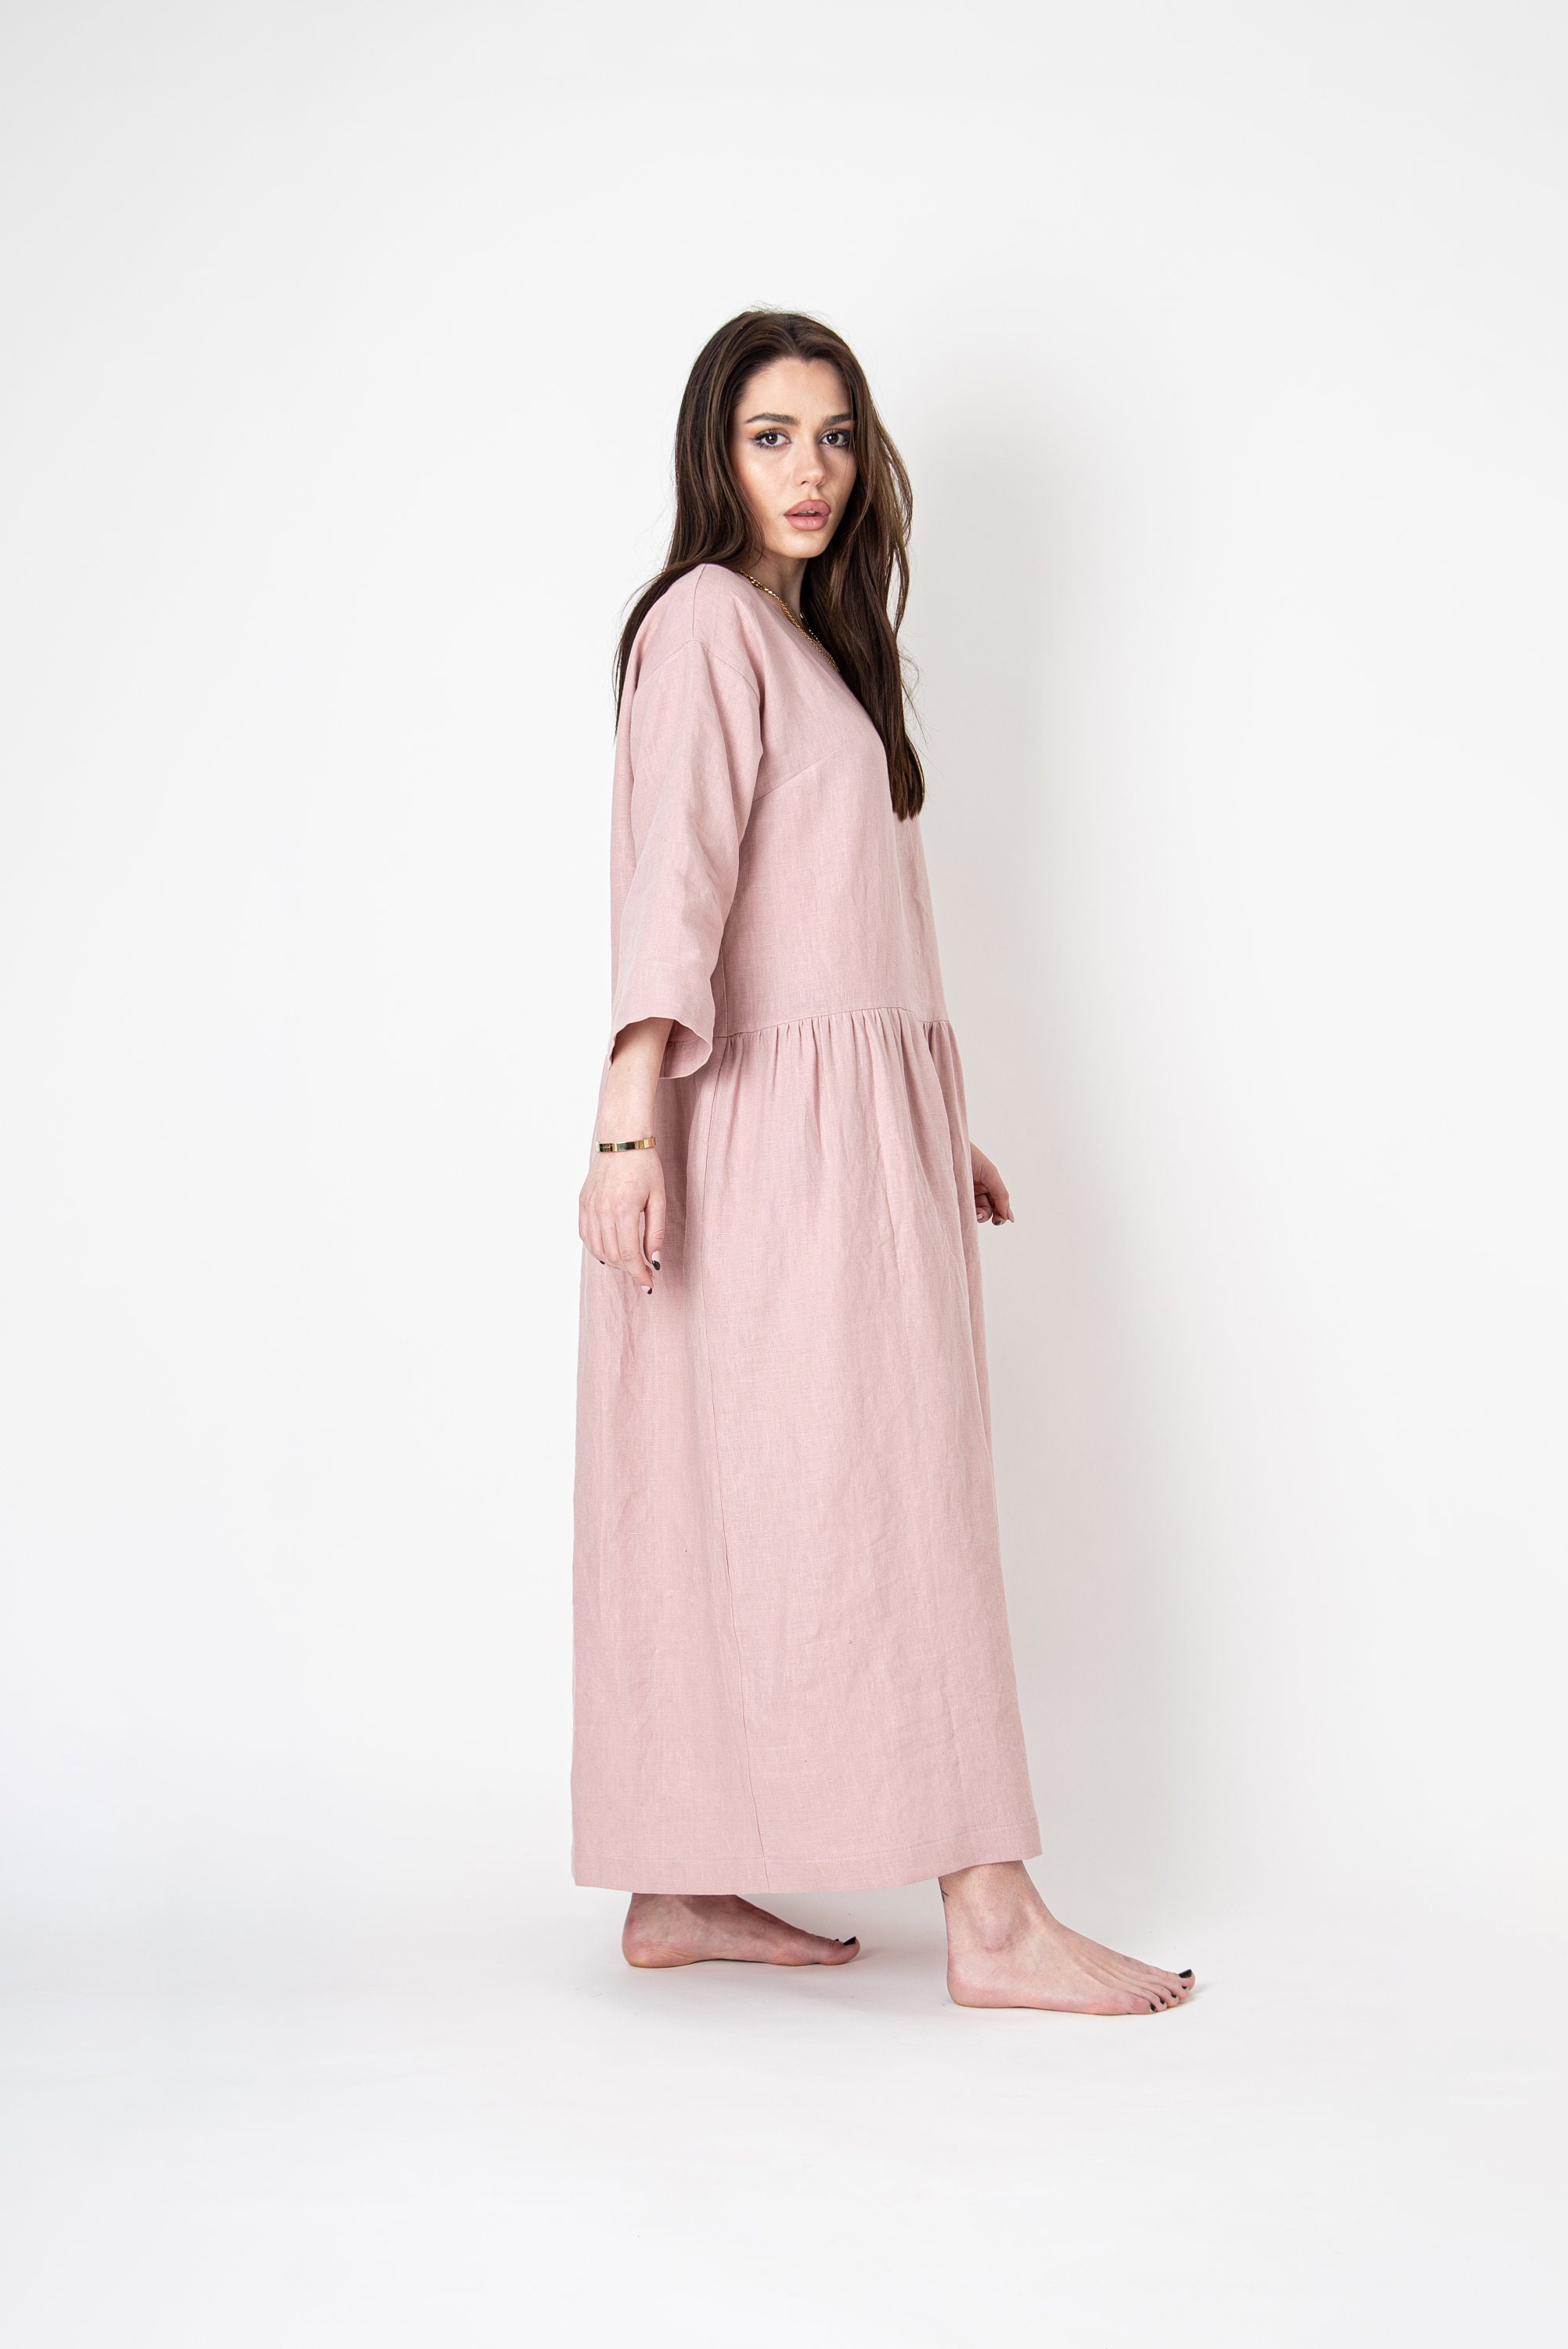 Blush Linen Dress/maxi Ruffle Dress/boho Linen Dress/linen - Etsy